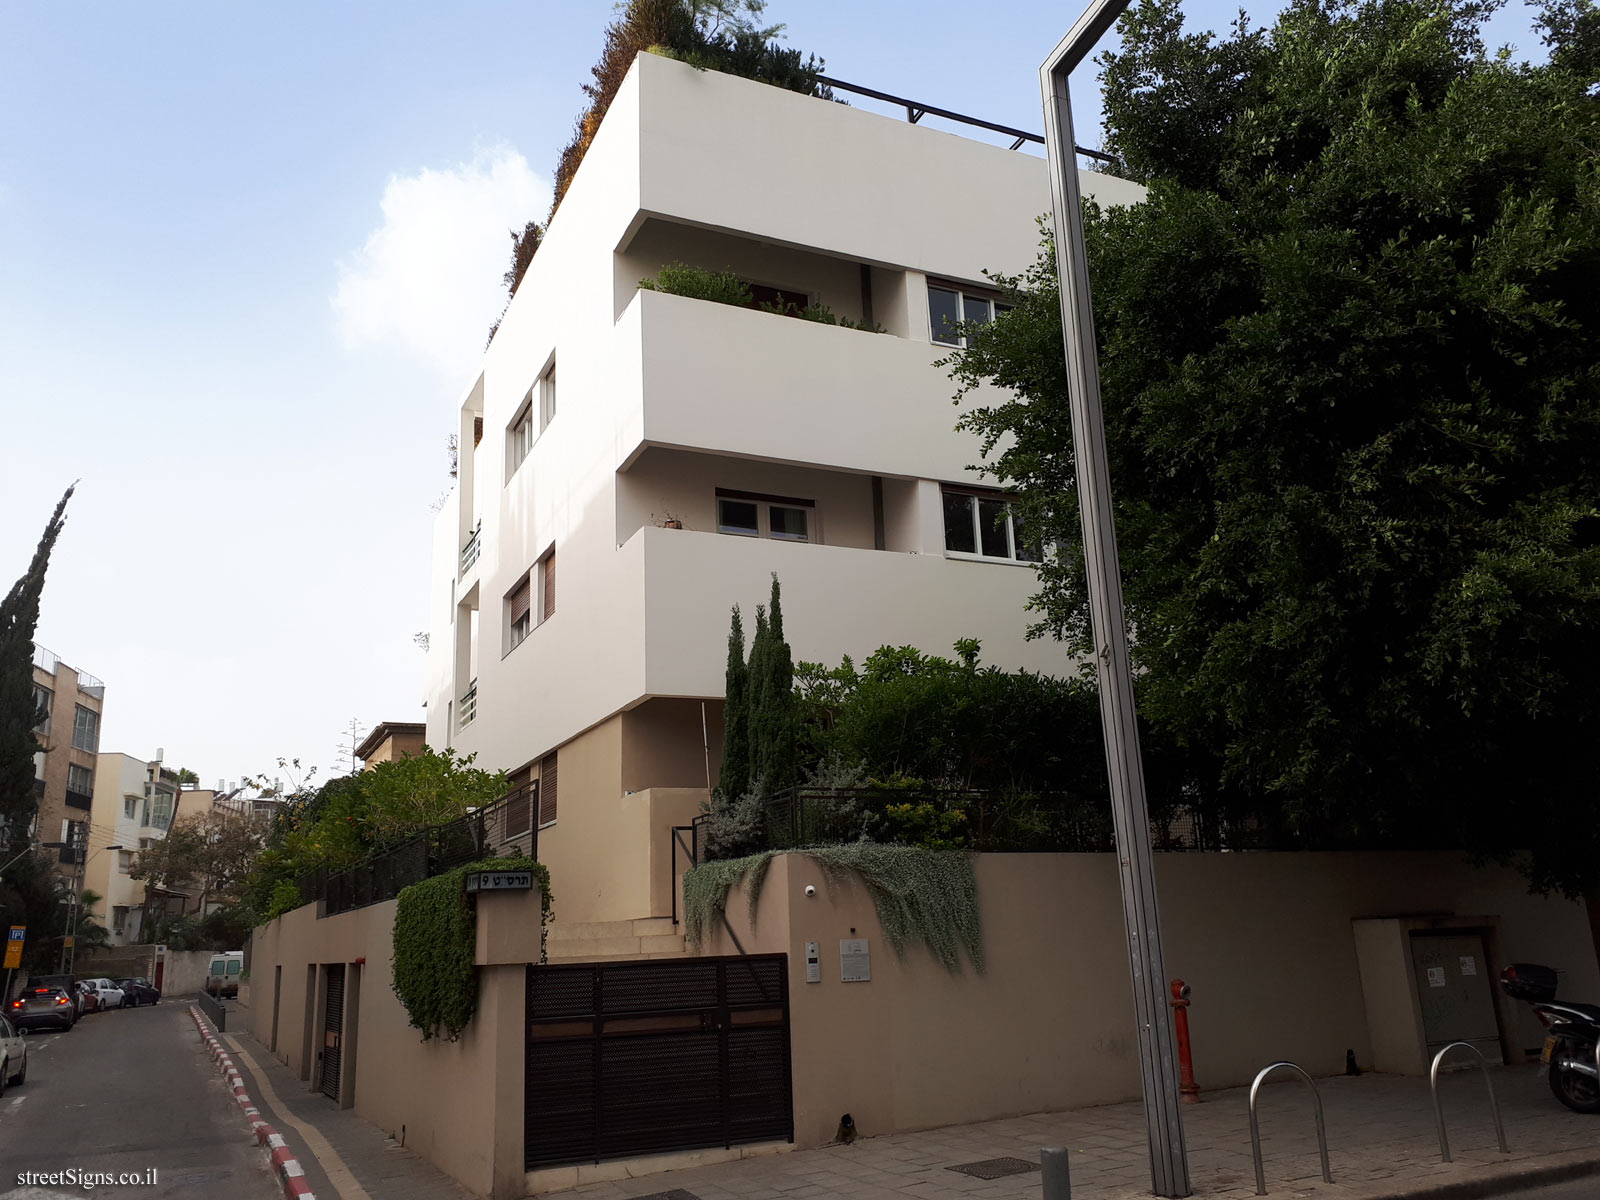 Tel Aviv - buildings for conservation - Tarsat 9 - Hissin 29